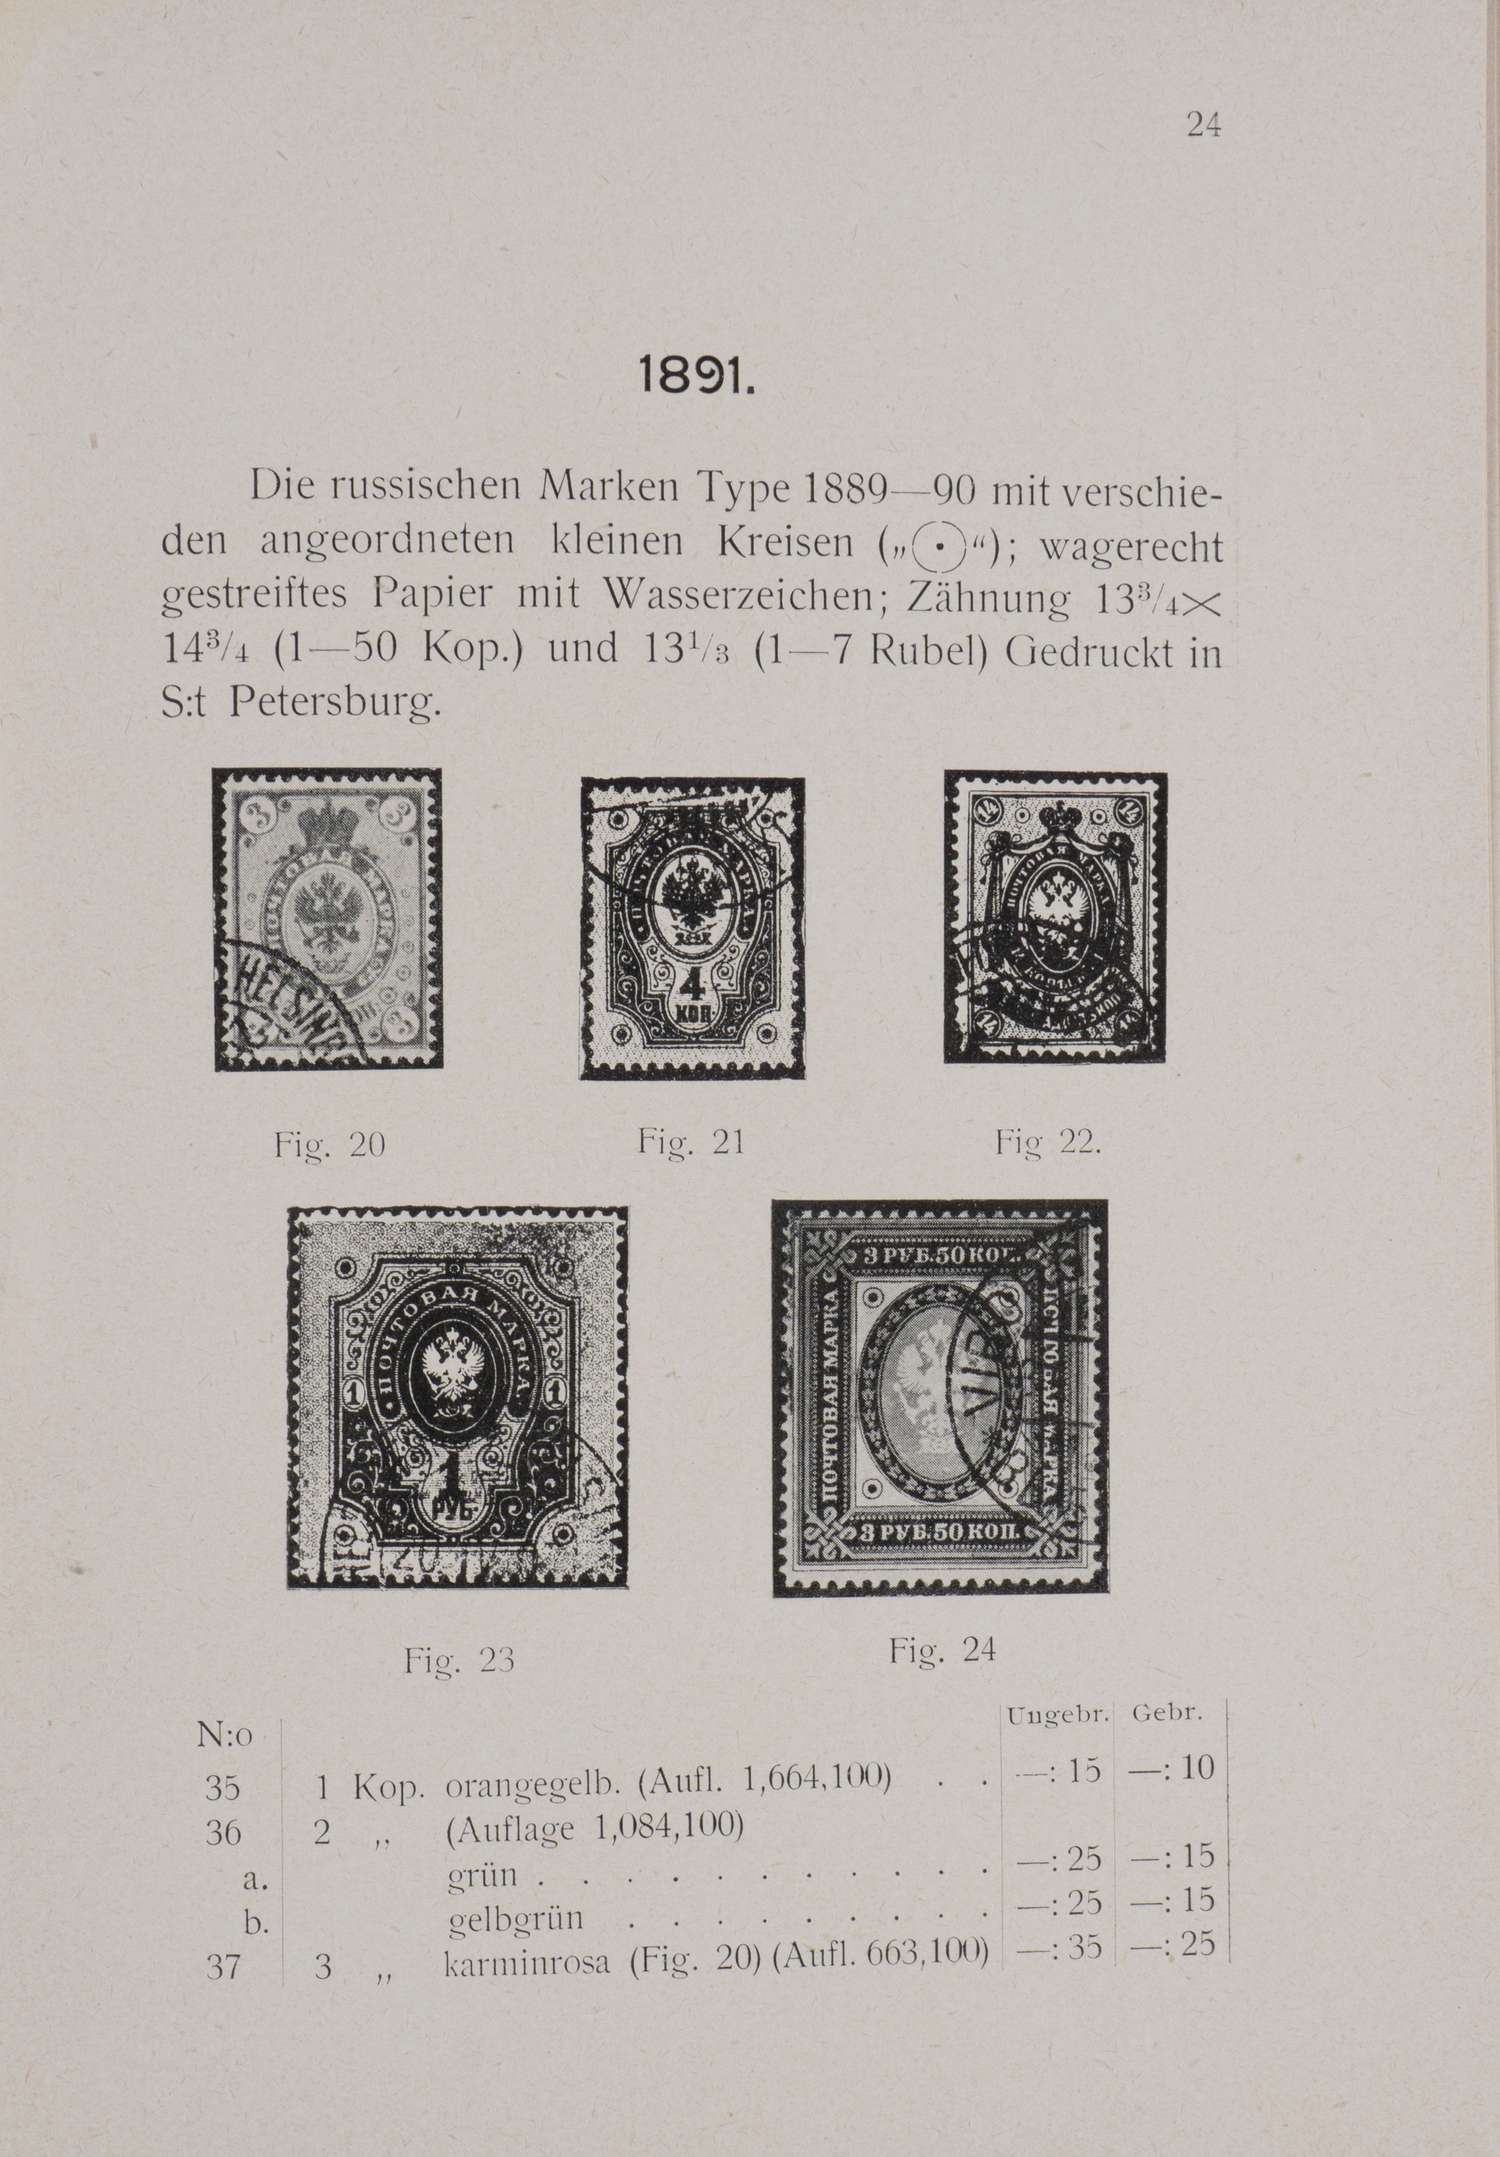 Каталог почтовых марок Великого княжества Финляндского. Выборг, 1908.